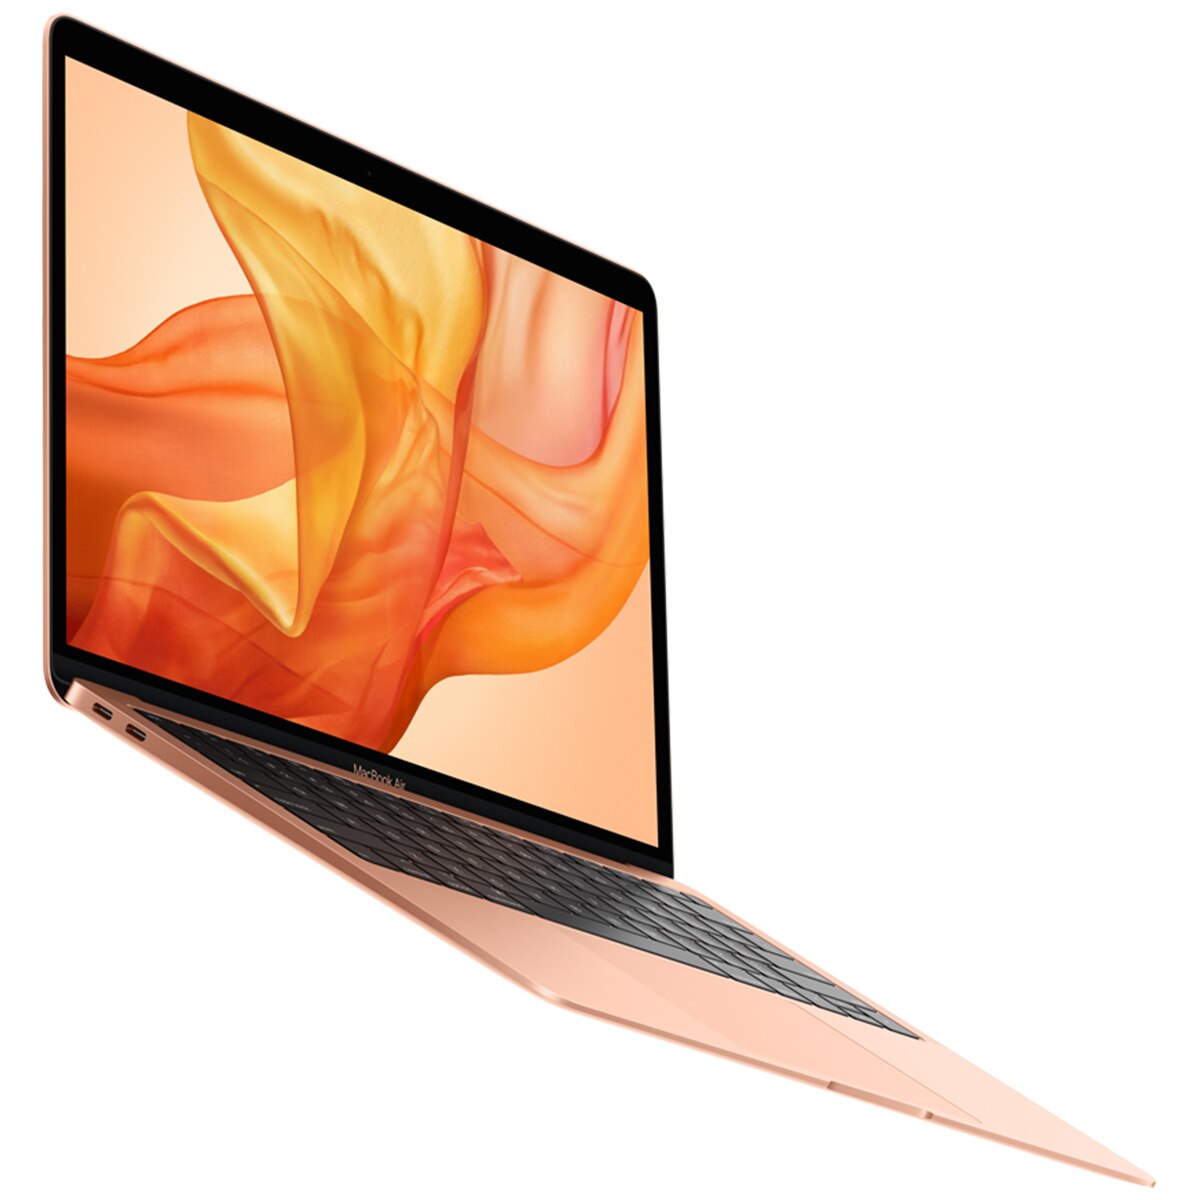 Macbook Air MVFM2X/A 13-inch MacBook Air: 1.6GHz dual-core 8th-generation Intel Core i5 processor, 128GB - Gold